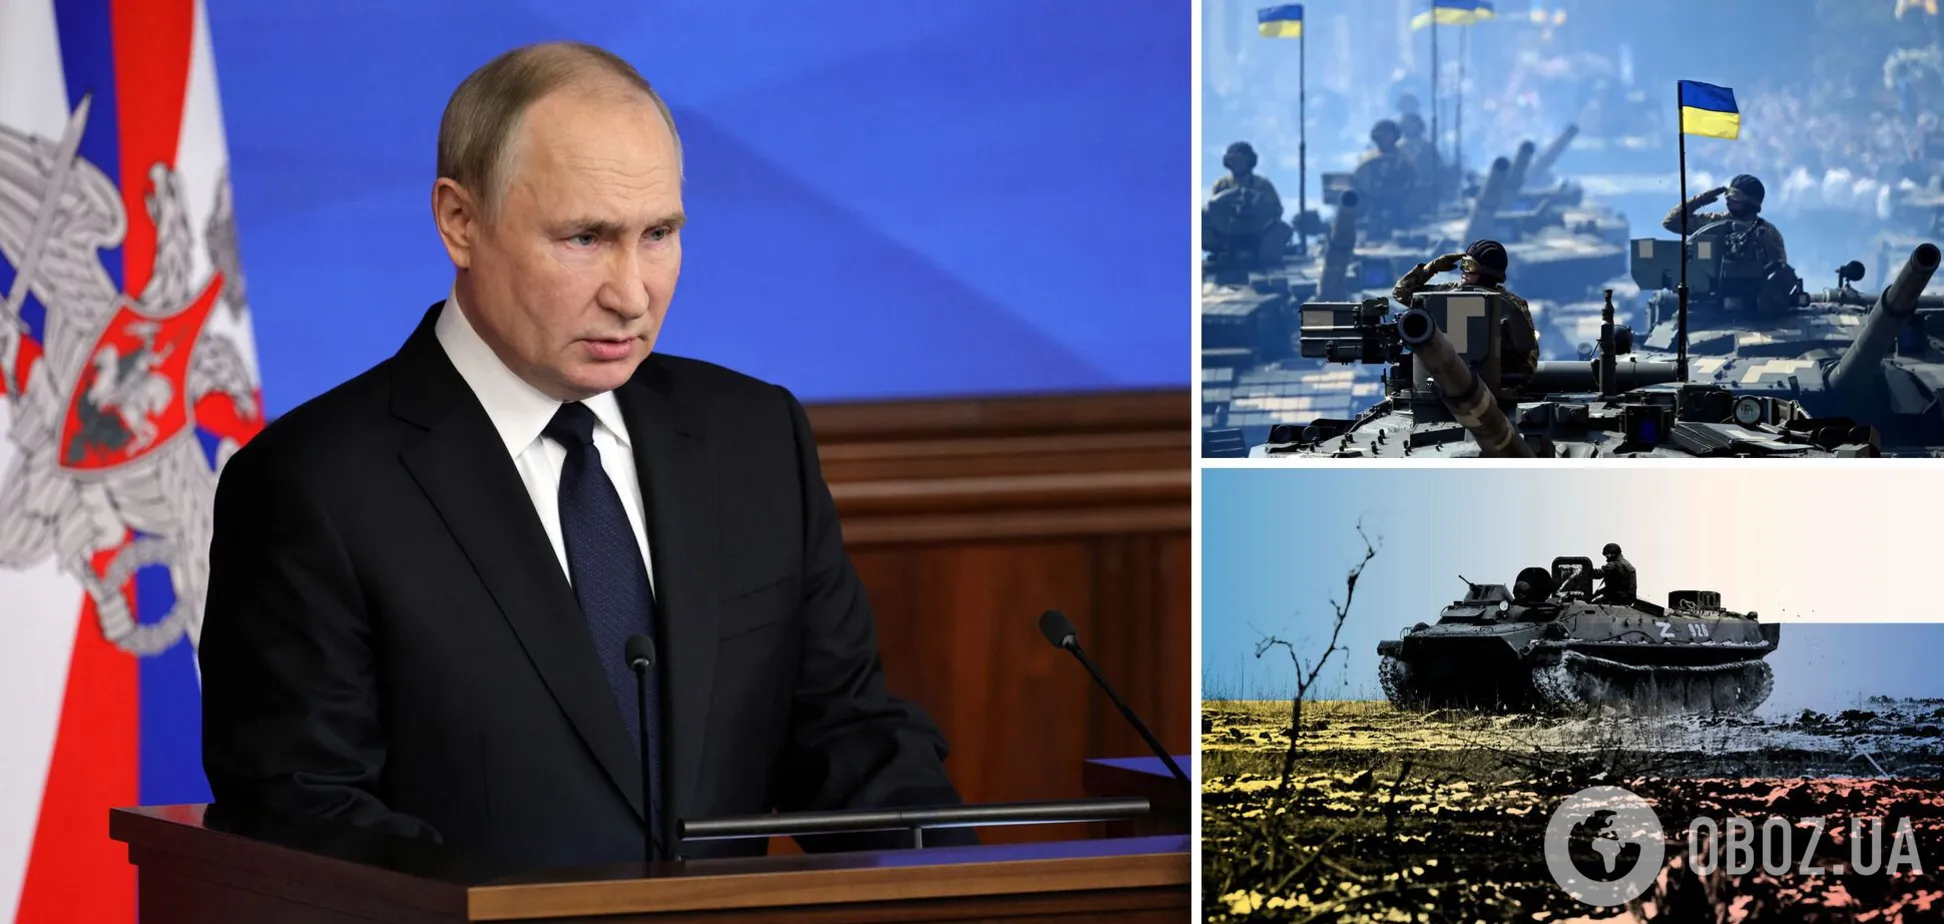 Россия продолжает агрессивную неспровоцированную войну против Украины, а запад задумывается о переговорах